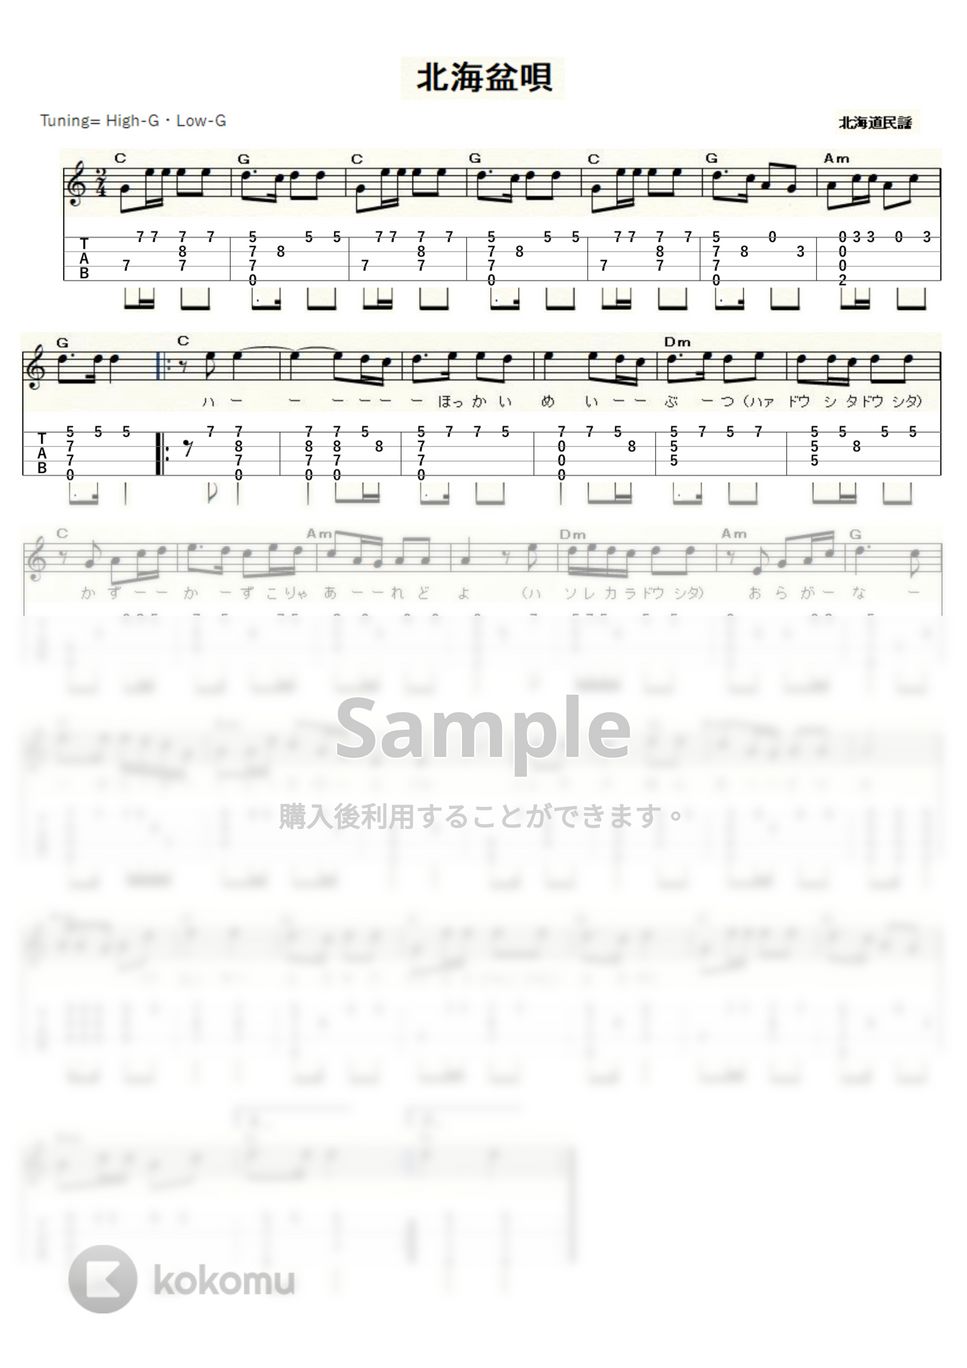 北海盆唄 (ｳｸﾚﾚｿﾛ/High-G・Low-G/中級) by ukulelepapa